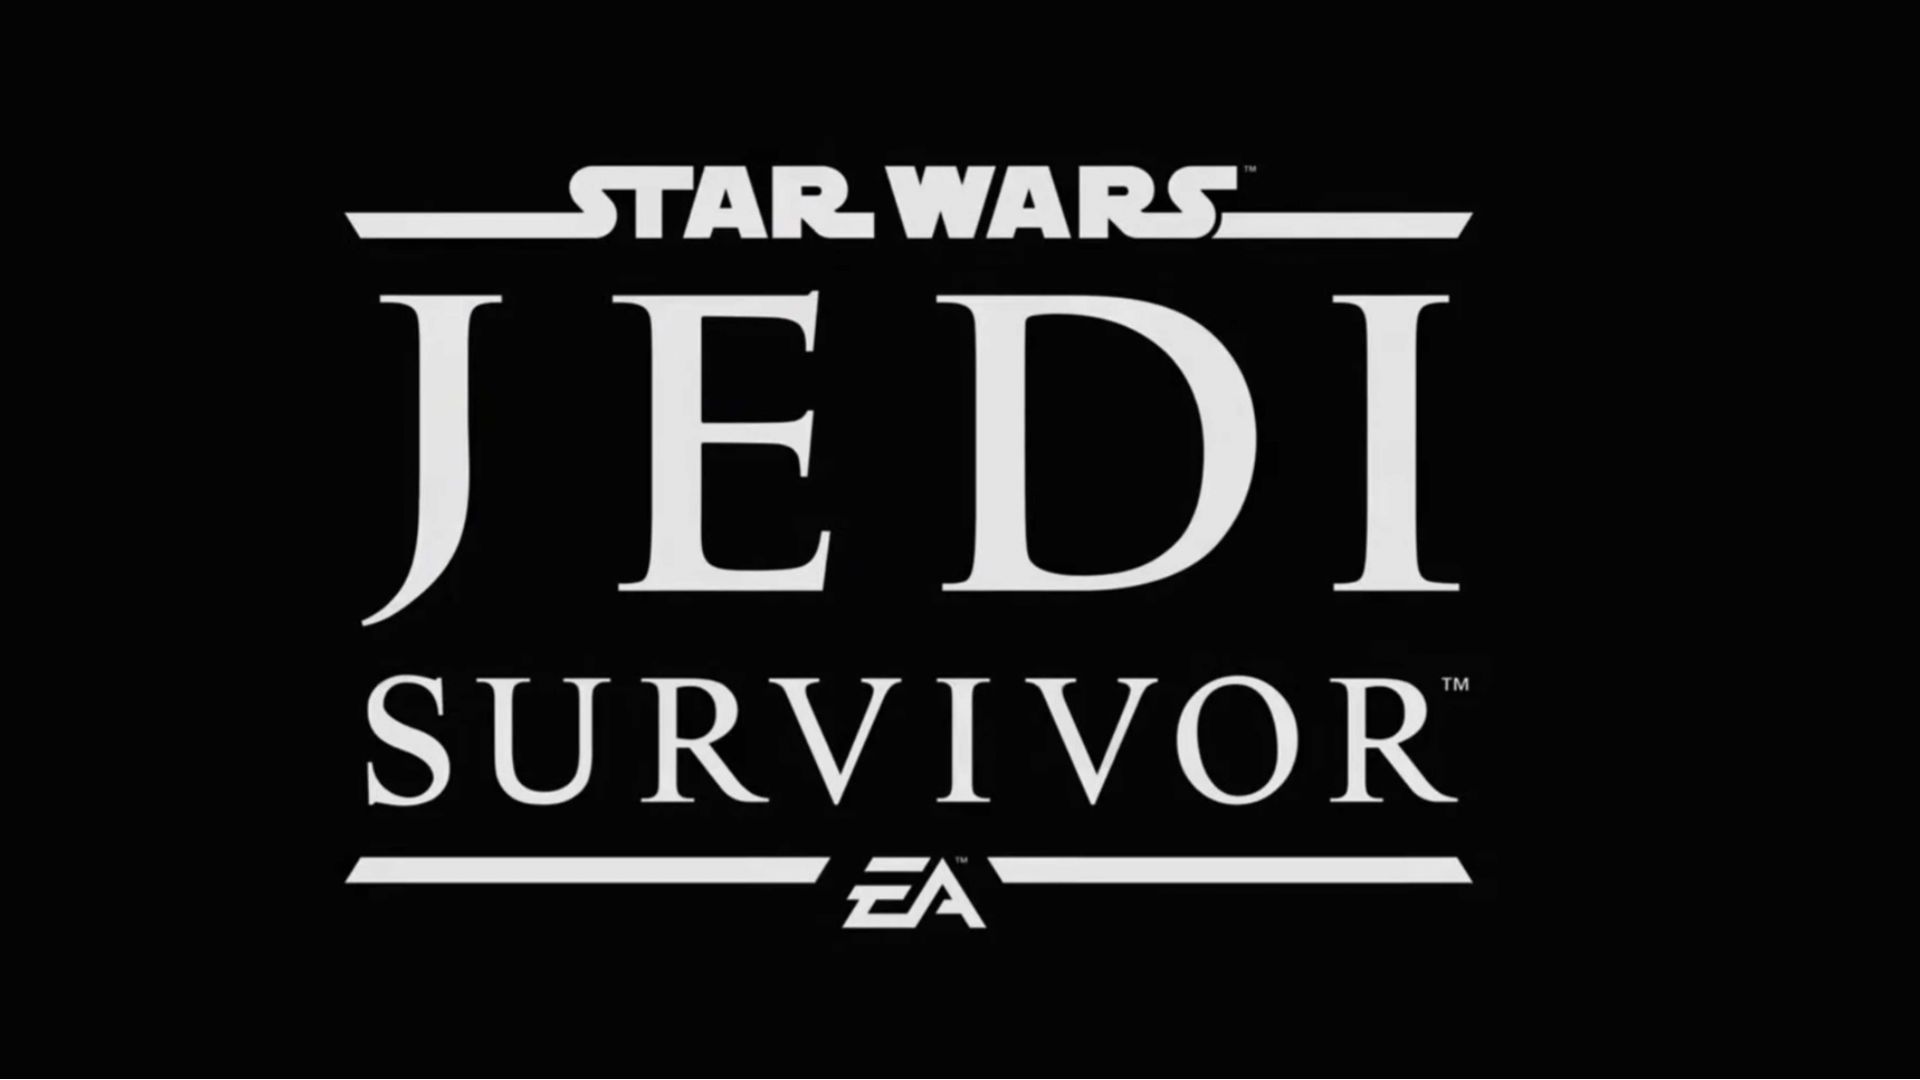 بازی Star Wars Jedi: Survivor وسعت بیشتری نسبت به بازی Fallen Order قبلی خواهد داشت